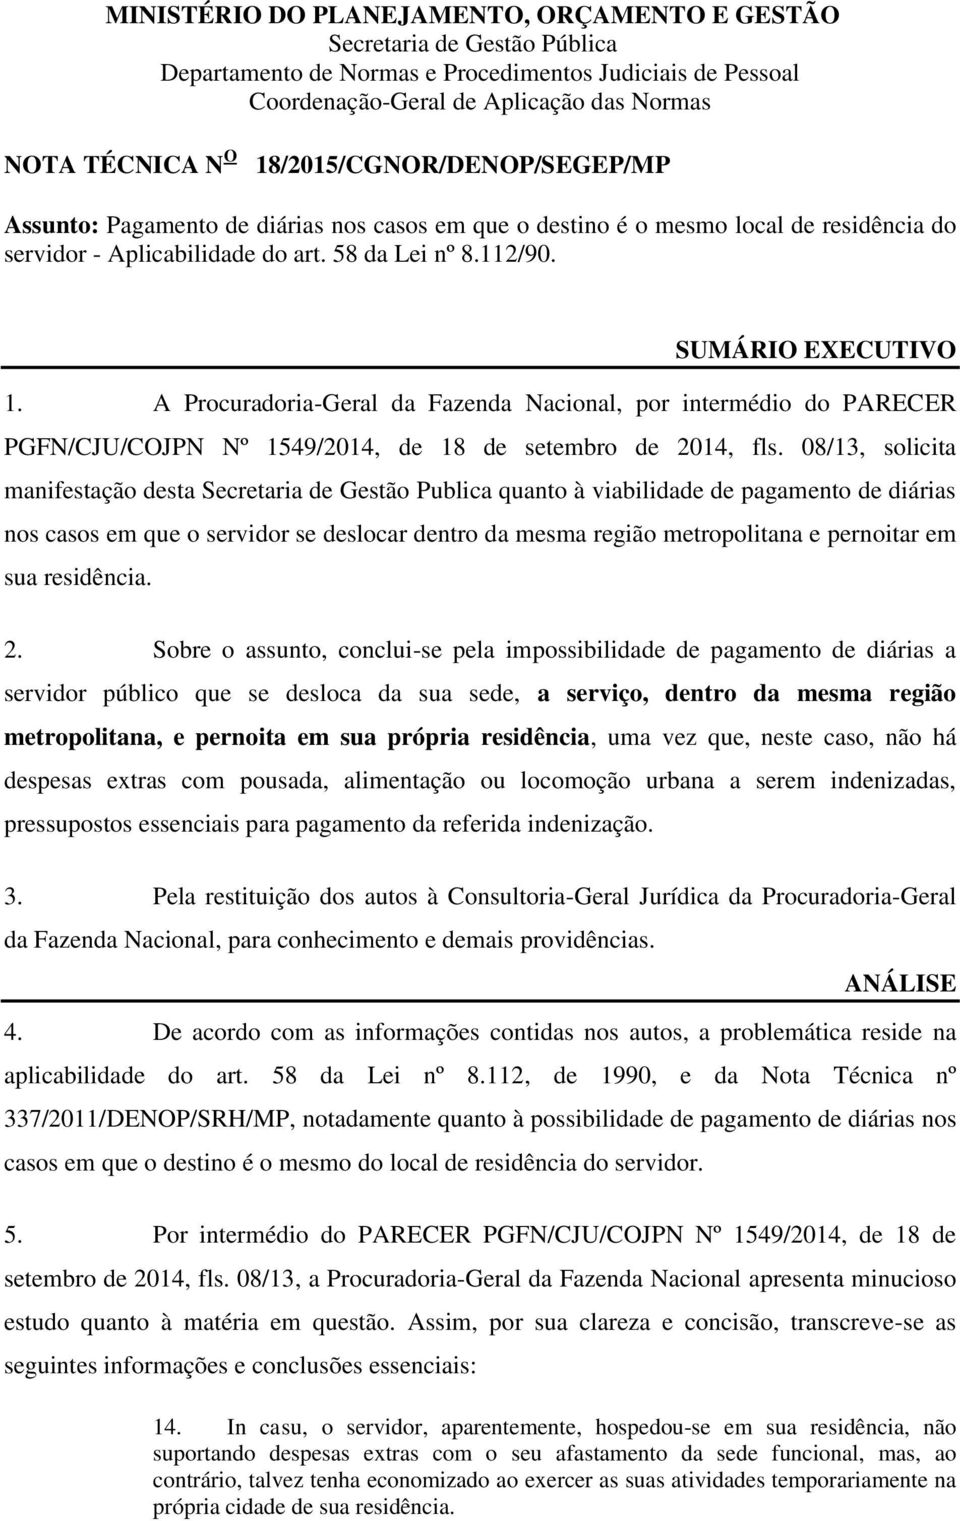 A Procuradoria-Geral da Fazenda Nacional, por intermédio do PARECER PGFN/CJU/COJPN Nº 1549/2014, de 18 de setembro de 2014, fls.